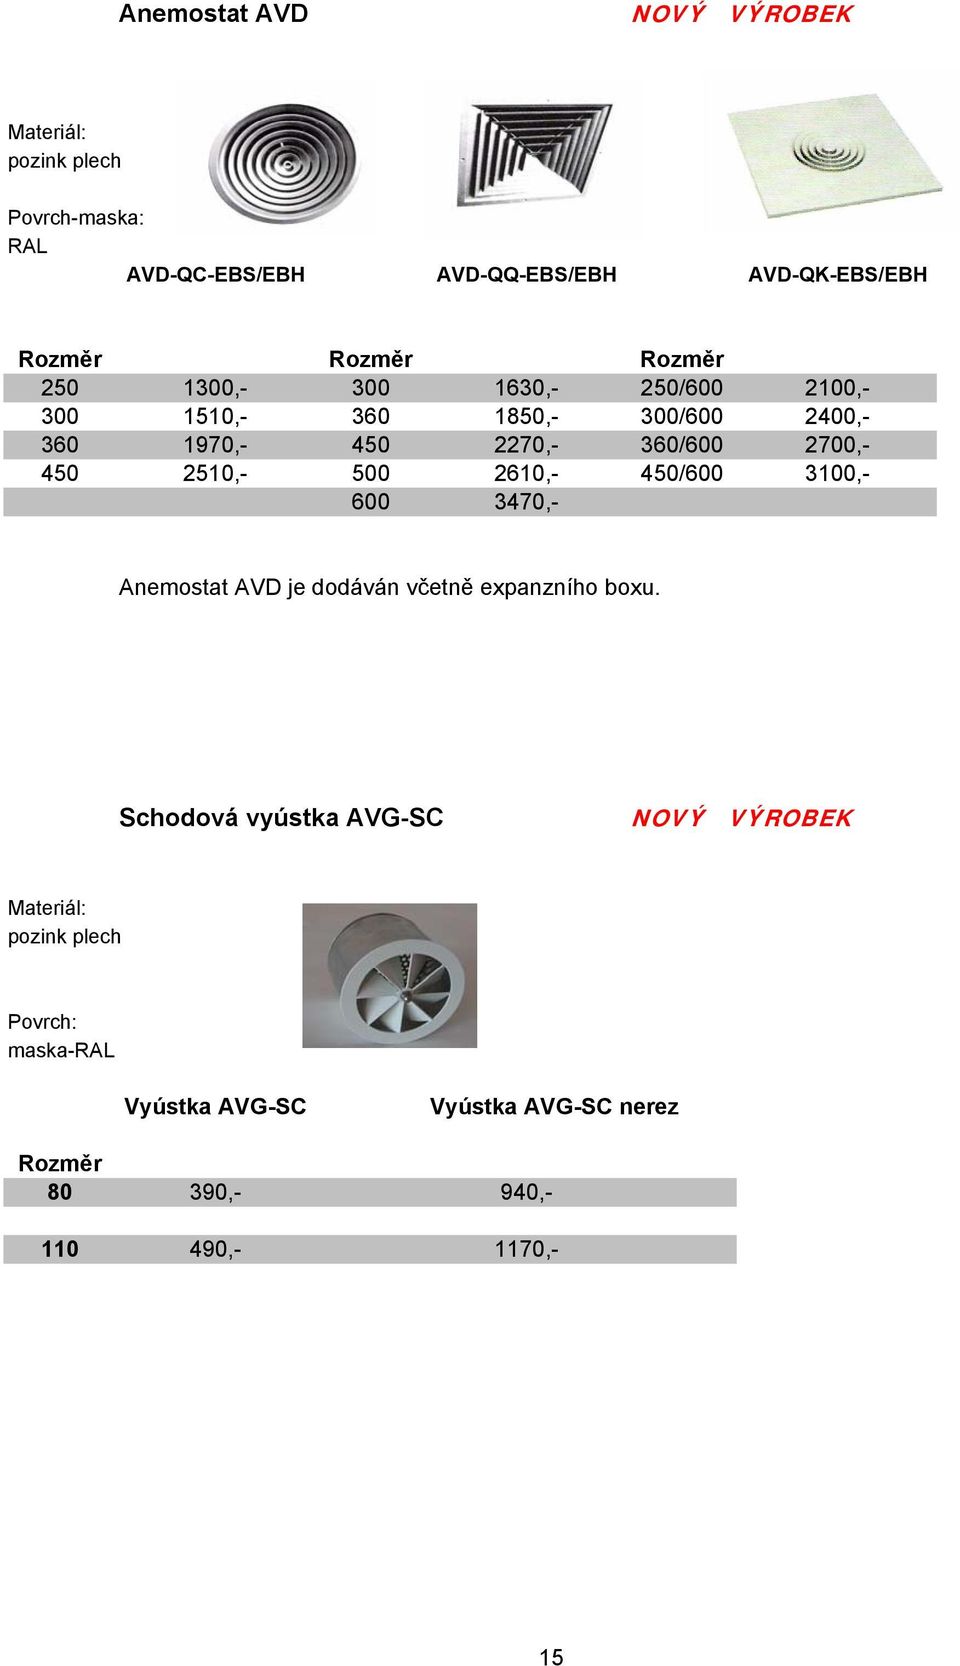 2510,- 500 2610,- 450/600 3100,- 600 3470,- Anemostat AVD je dodáván včetně expanzního boxu.